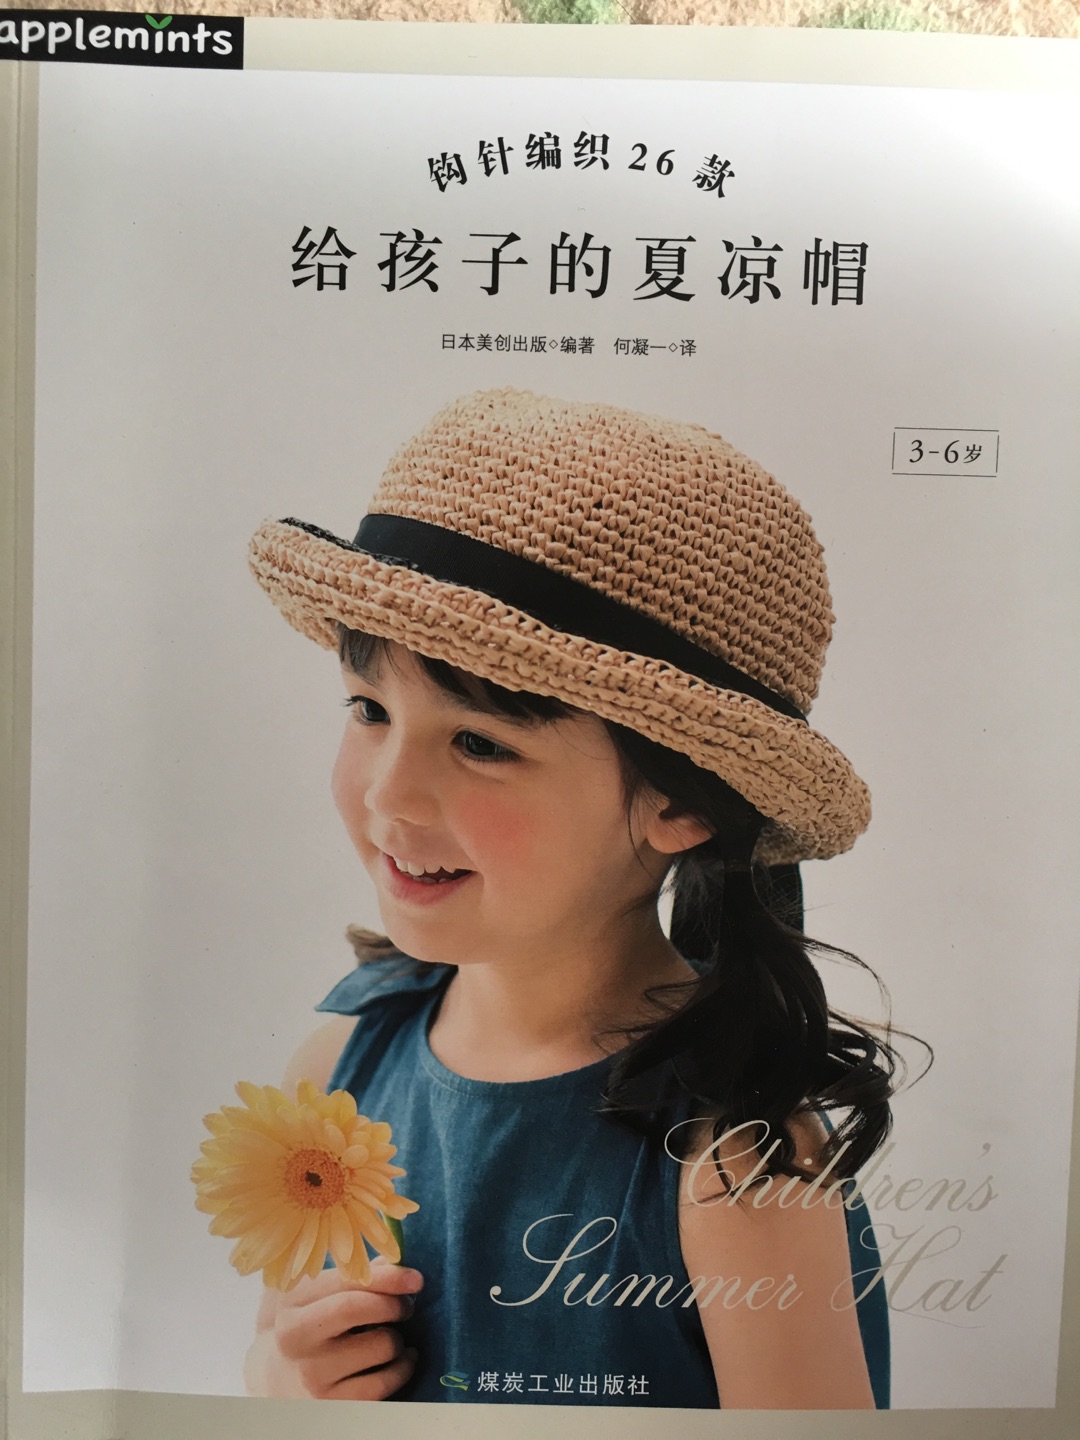 很喜欢这本书，宝宝两岁多，照着书可以做很多帽子，搭配不同的衣服